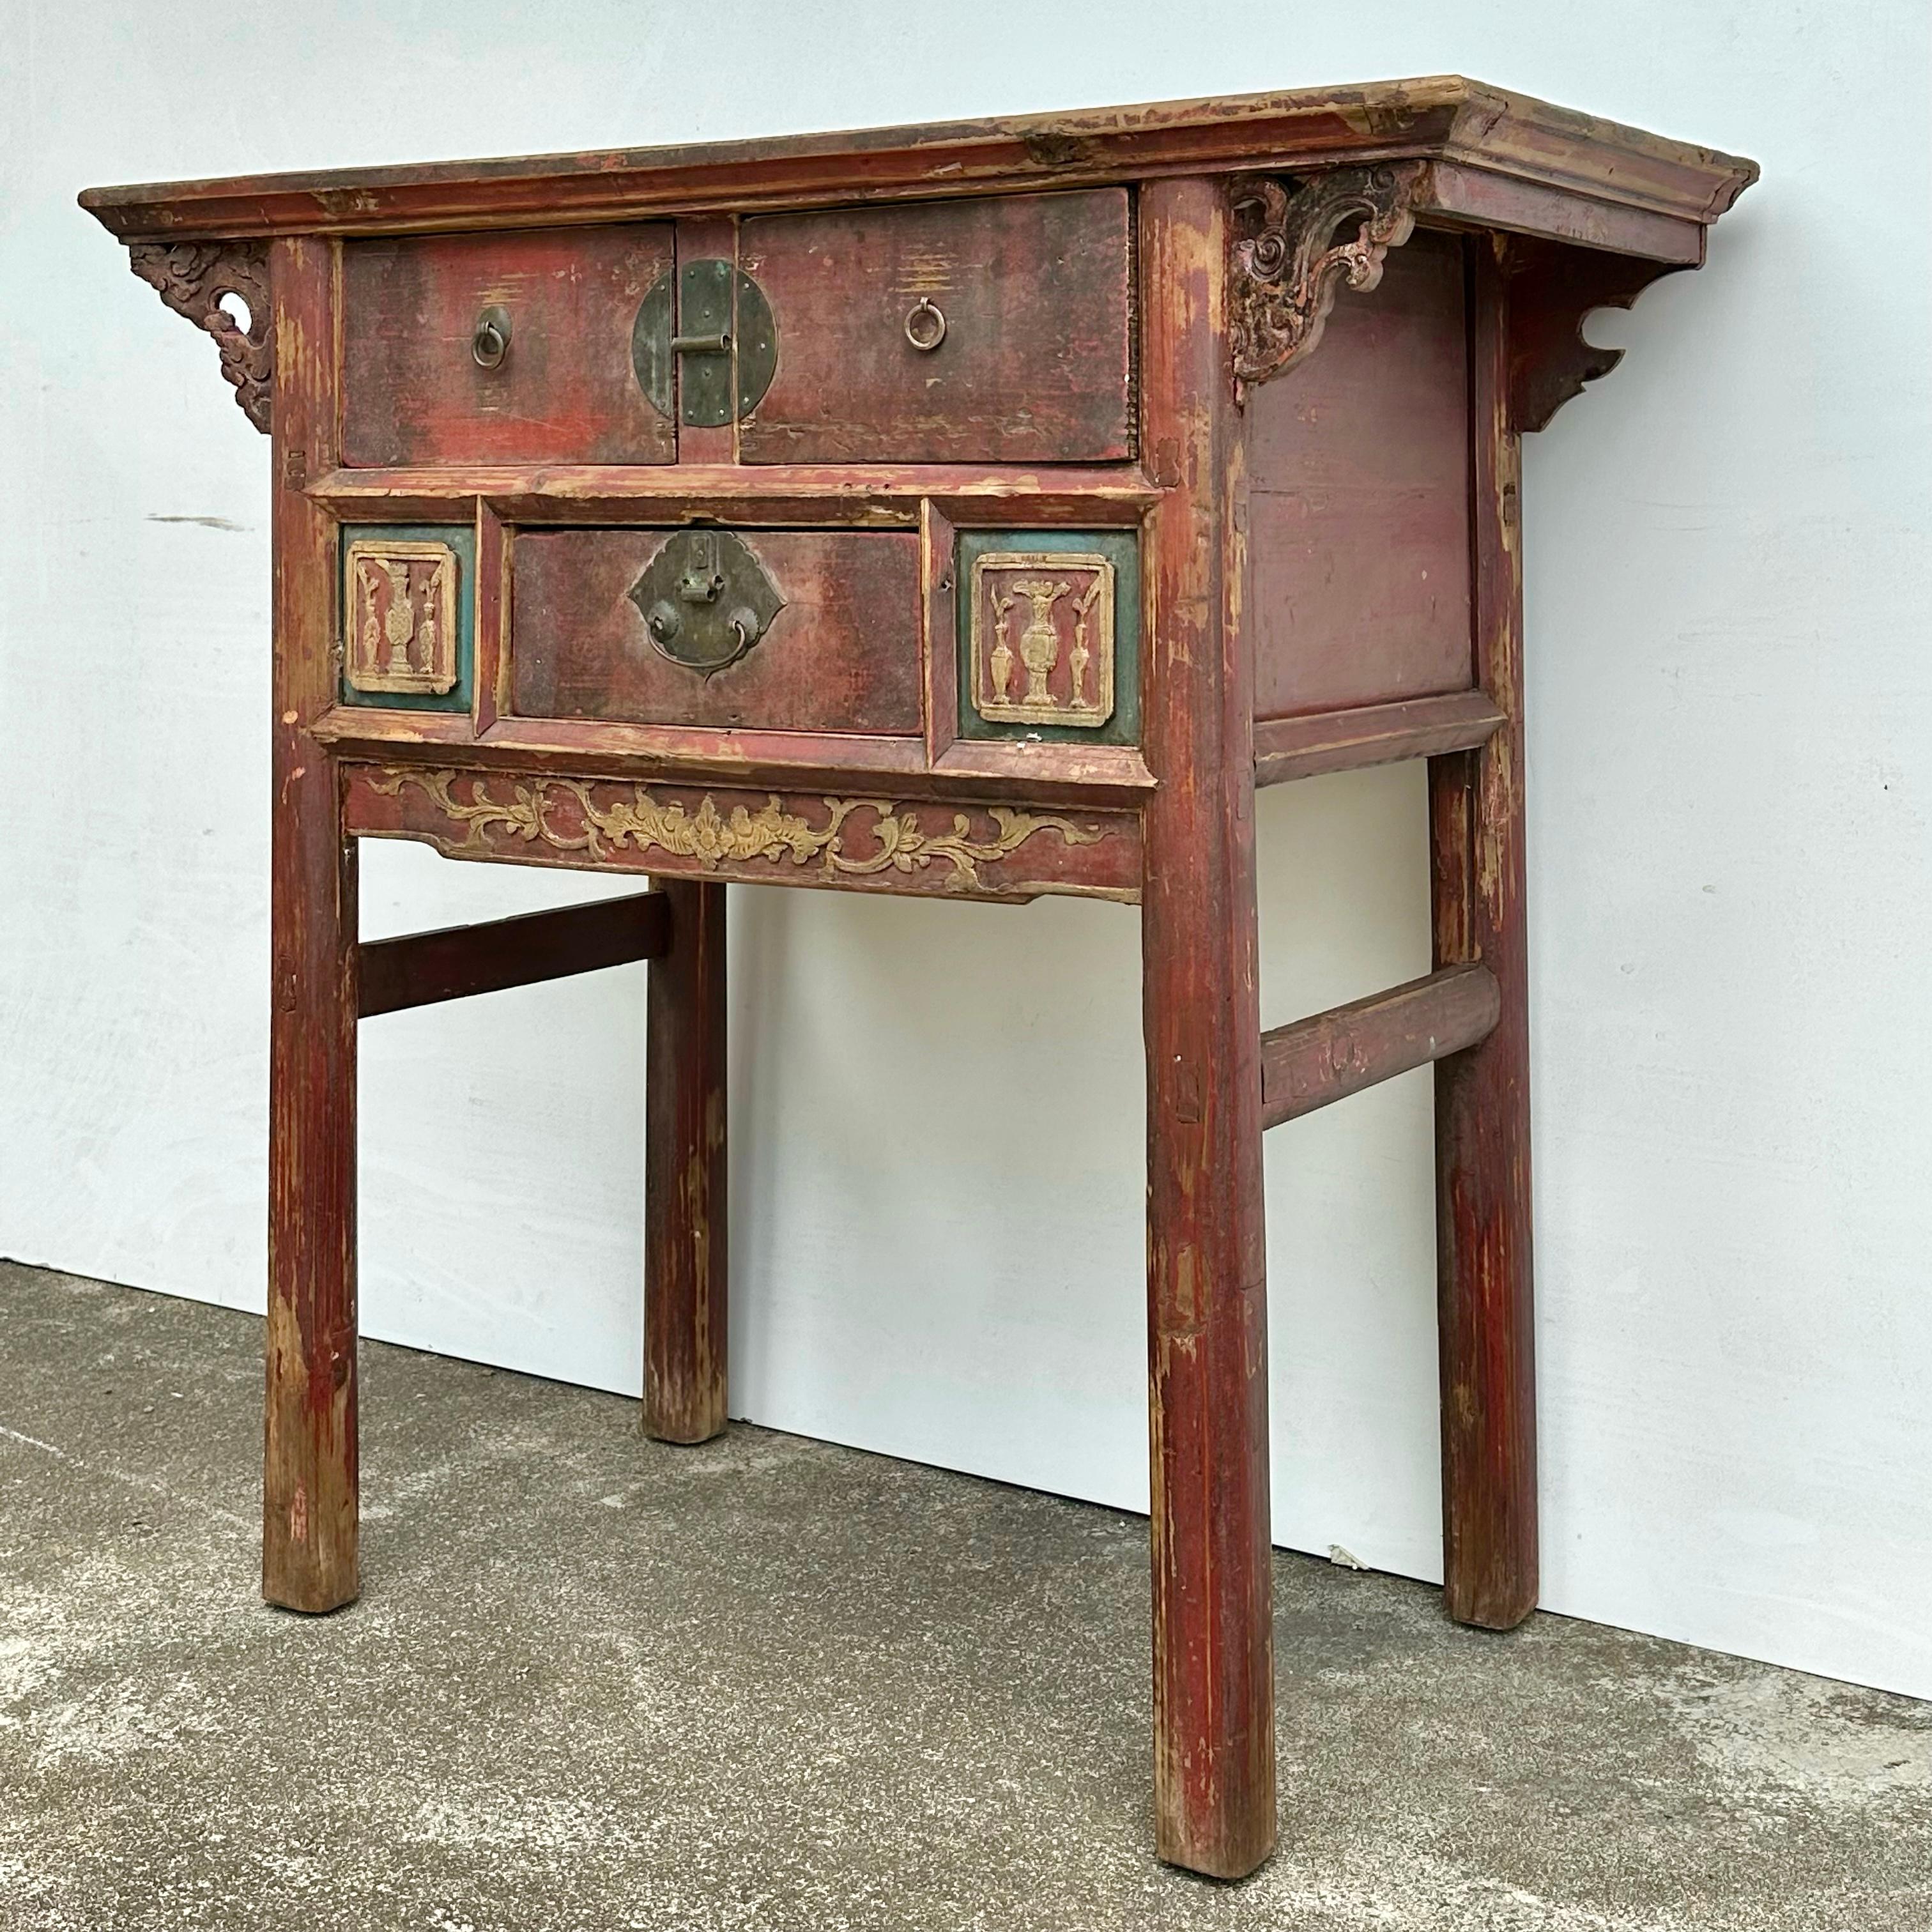 Ein alter Tannenholztisch aus der Provinz Fujian mit sehr schöner Originalfarbe und Patina. Die Messingbeschläge an diesem Tisch sind original, es fehlt eine runde Rückwand an der rechten Schublade, die aber auf Wunsch ersetzt werden kann. Der